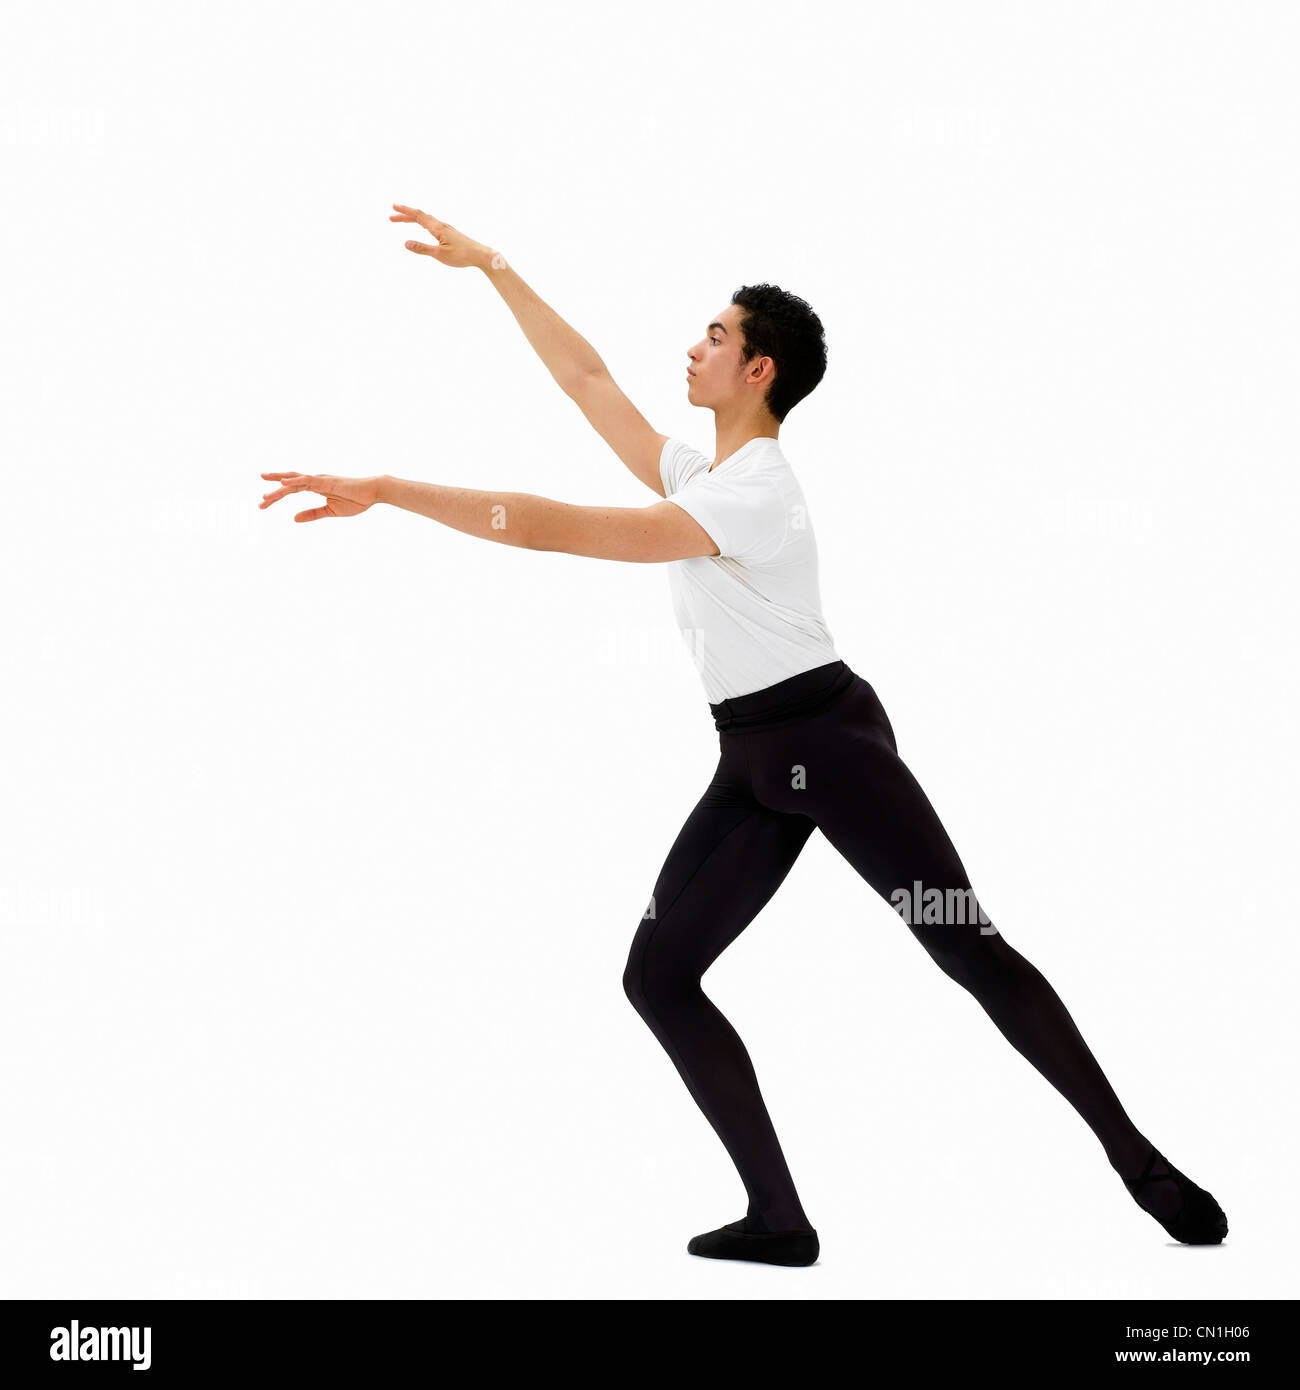 Bailarina de Ballet masculino Foto de stock